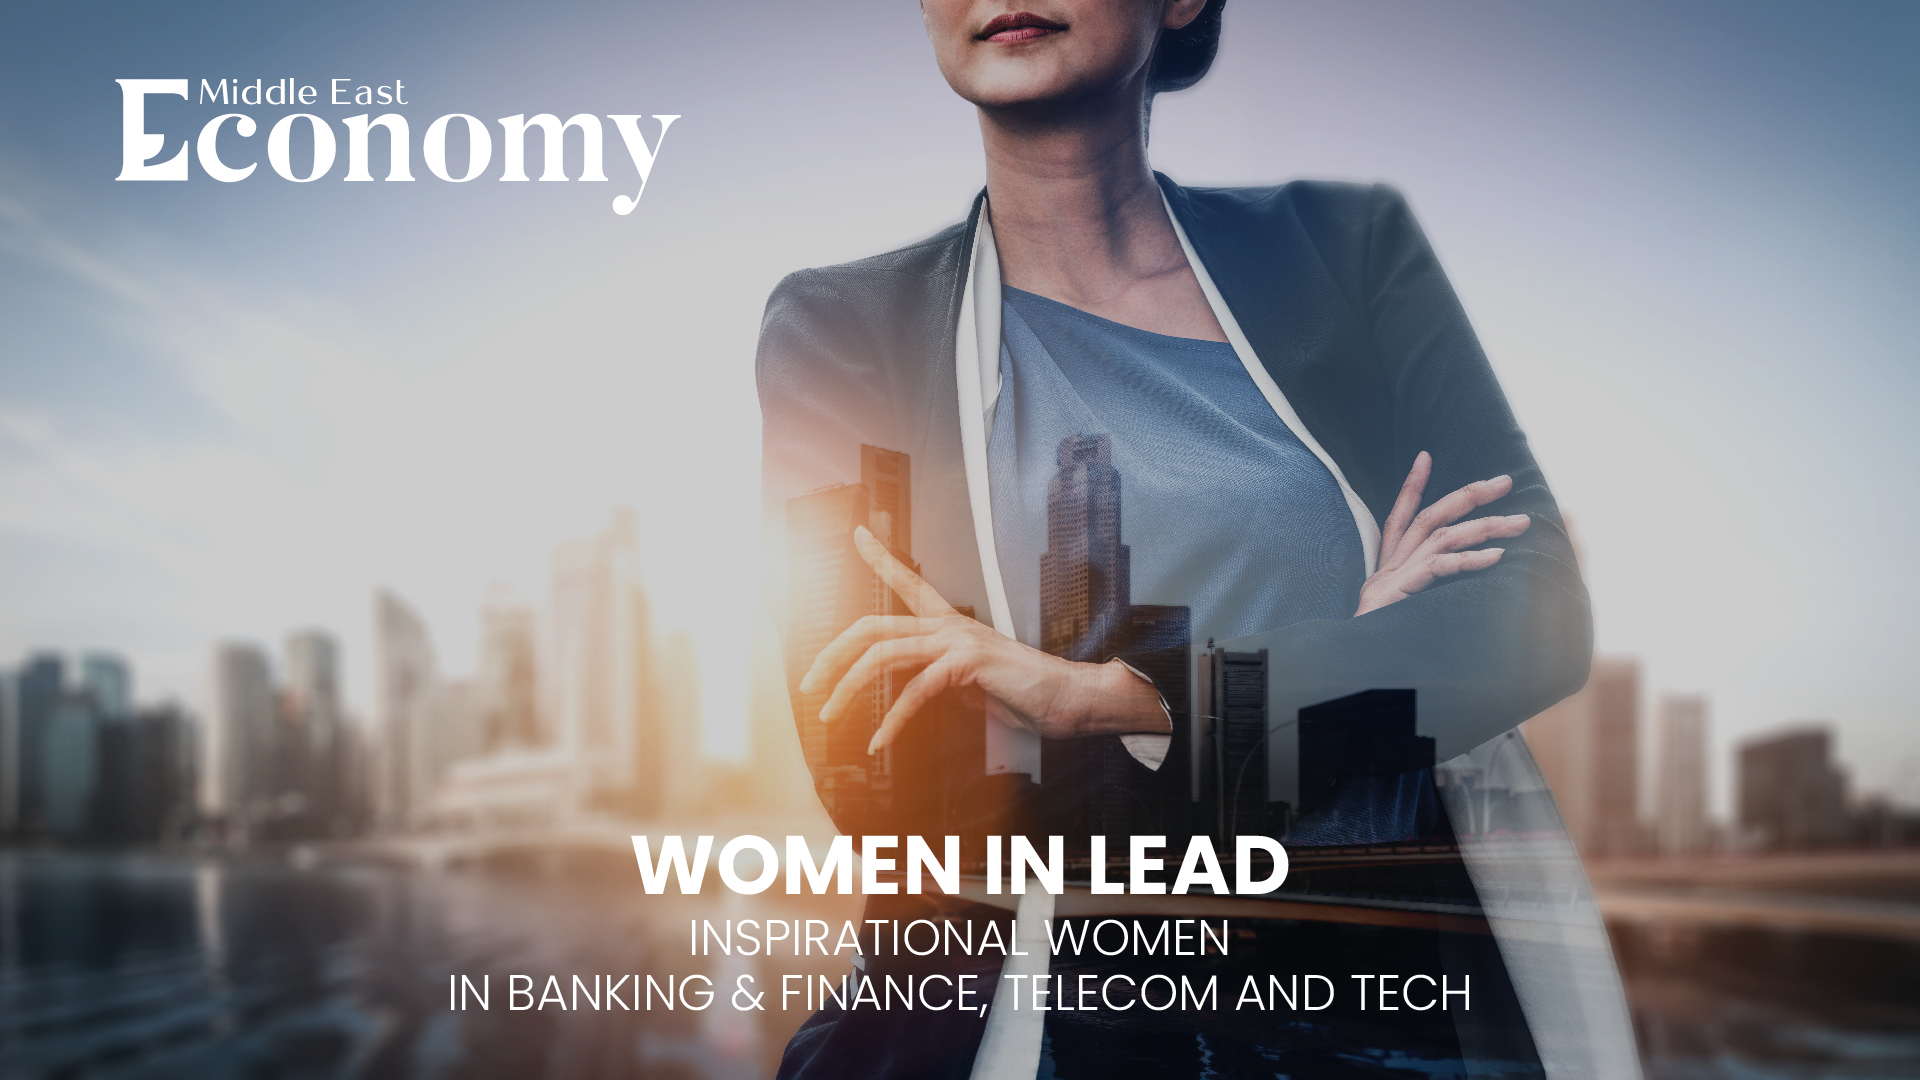 Women lead